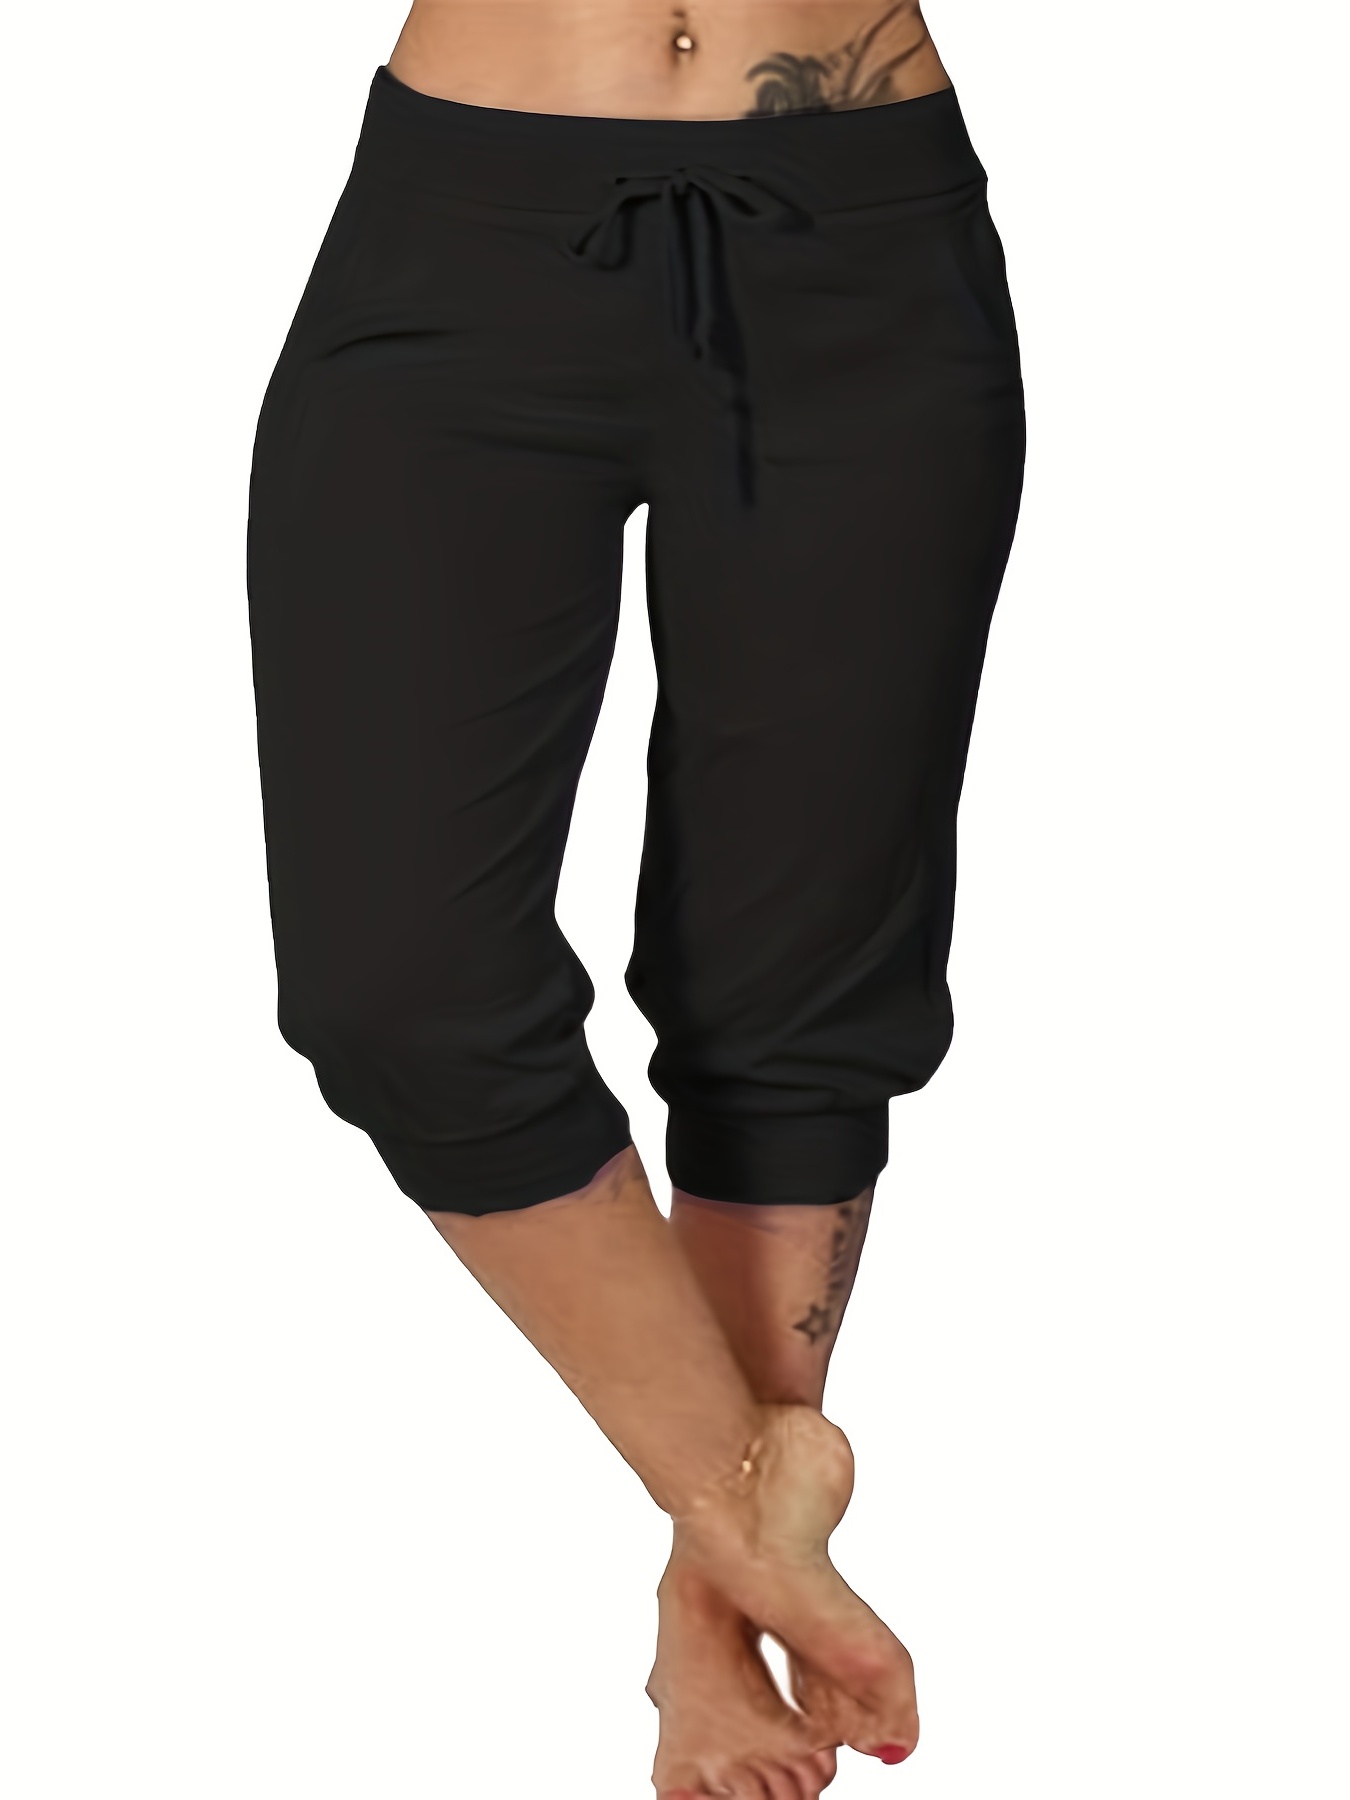 Khombu Womens size large L capri pants black woven lightweight